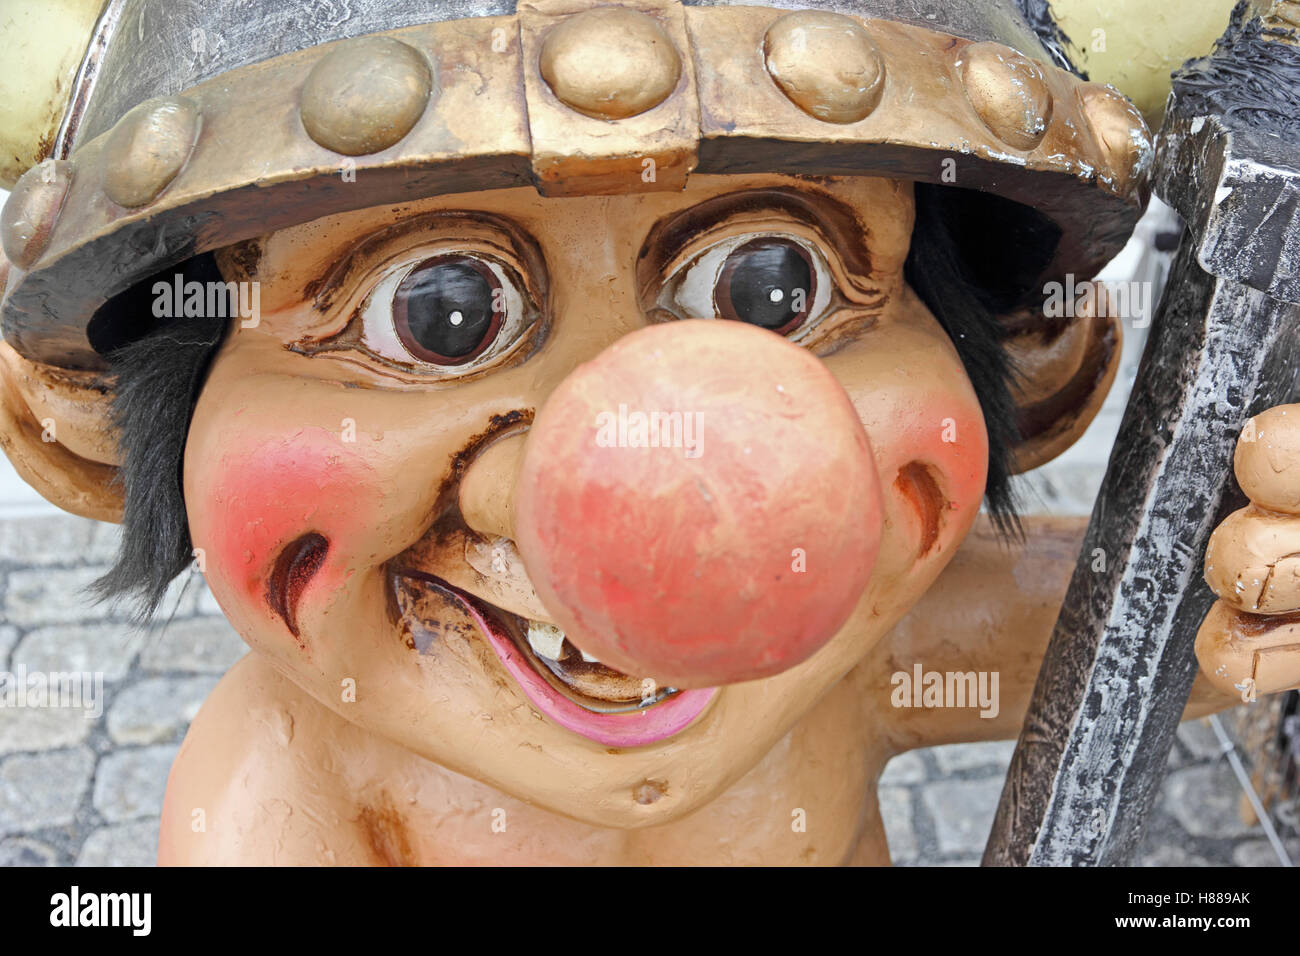 Um close-up de uma estátua de um troll com um olhar assustador